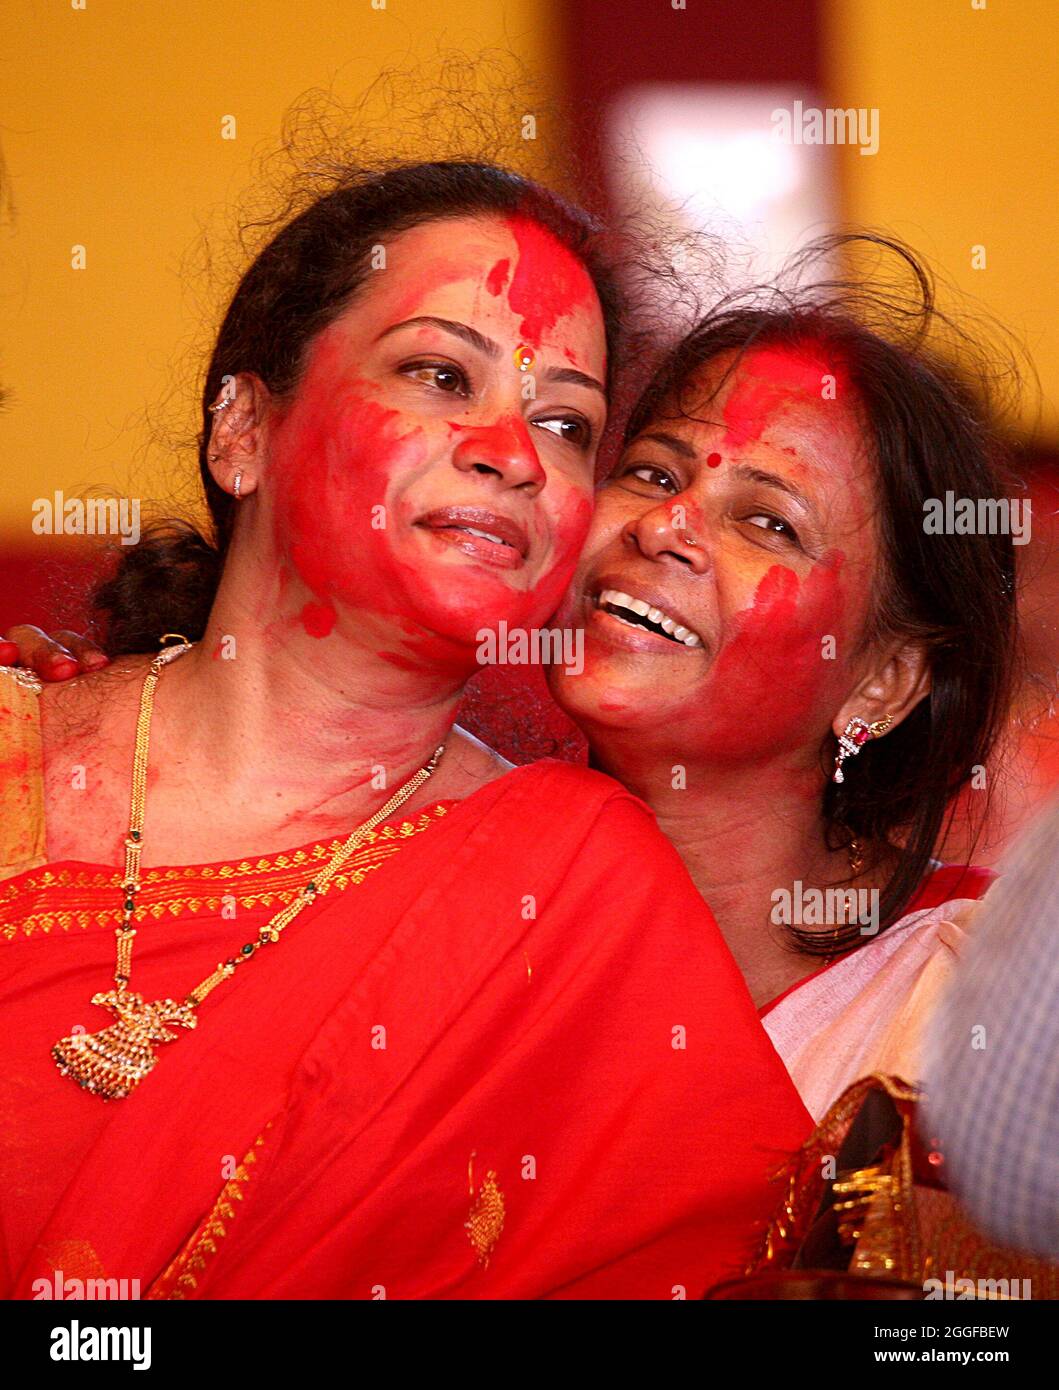 Le donne indiane bengalesi applicano vermilion su ogni altra faccia durante il khela indoor l'ultimo giorno del festival Durga Puja di 10 giorni a Nuova Delhi. Foto Stock